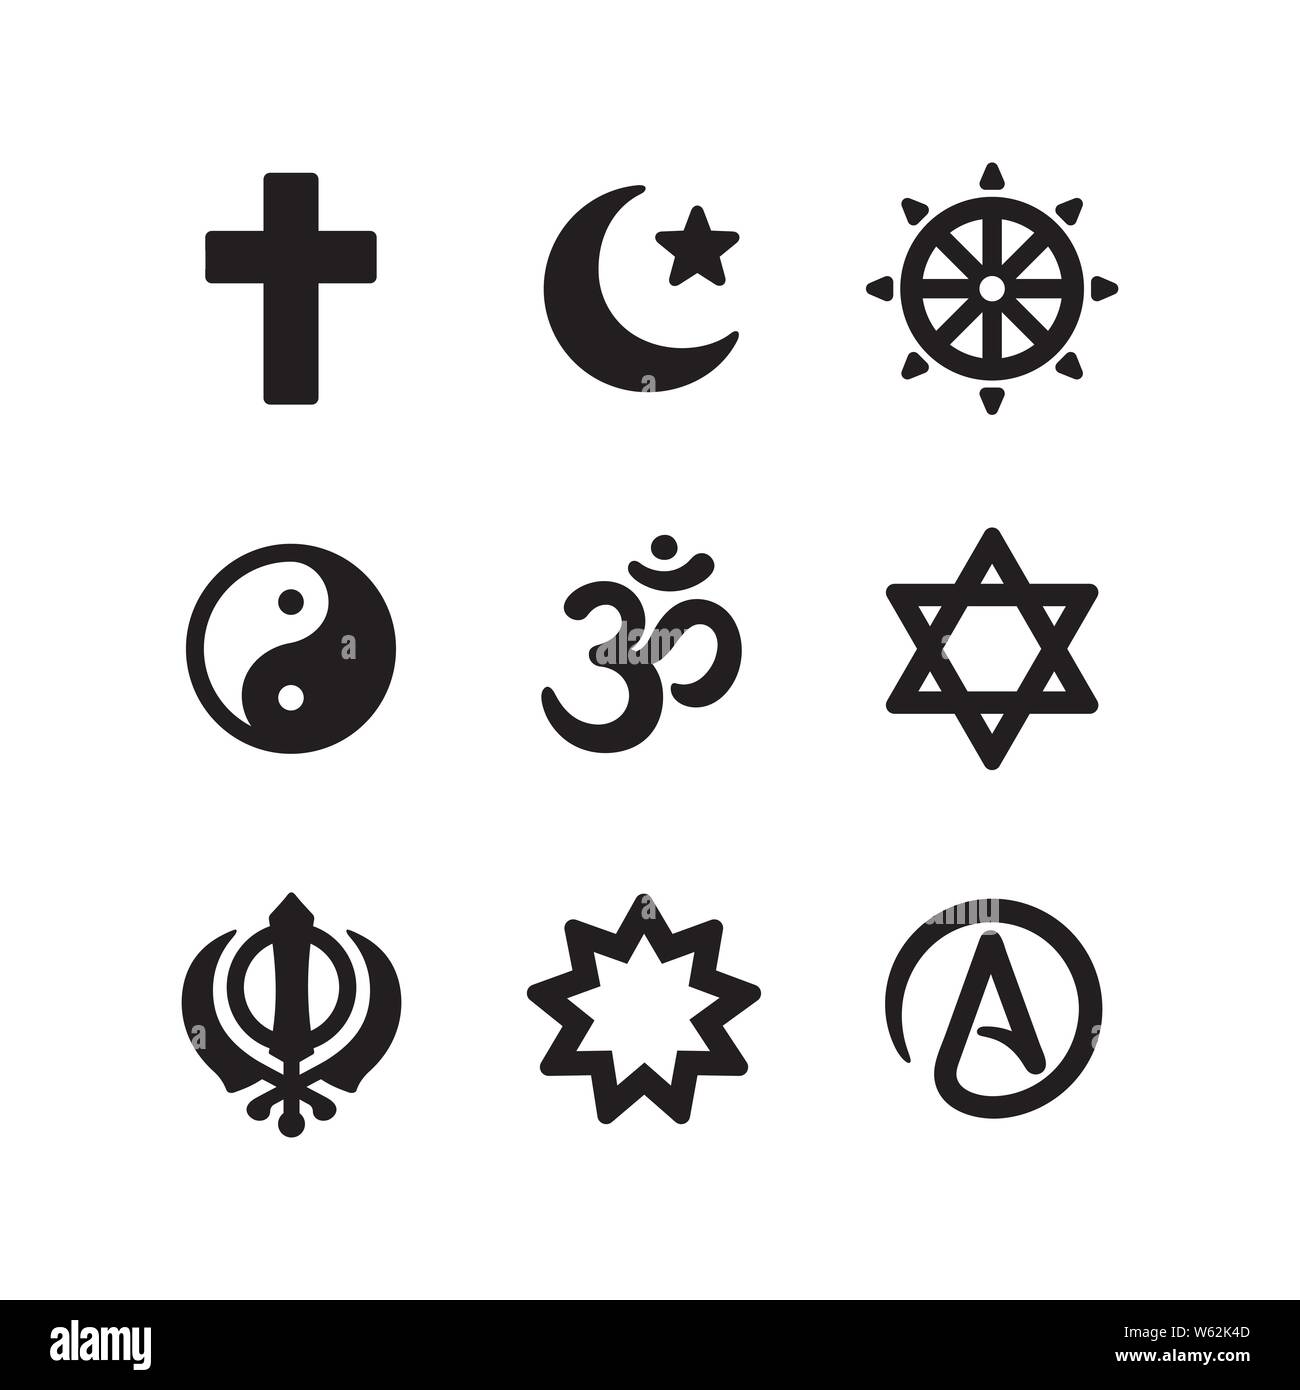 Icona set di simboli religiosi. Il cristianesimo, islam, il Buddismo, altre principali religioni del mondo e ateismo segno, semplice e di stile moderno e minimale. Vettore pic Illustrazione Vettoriale